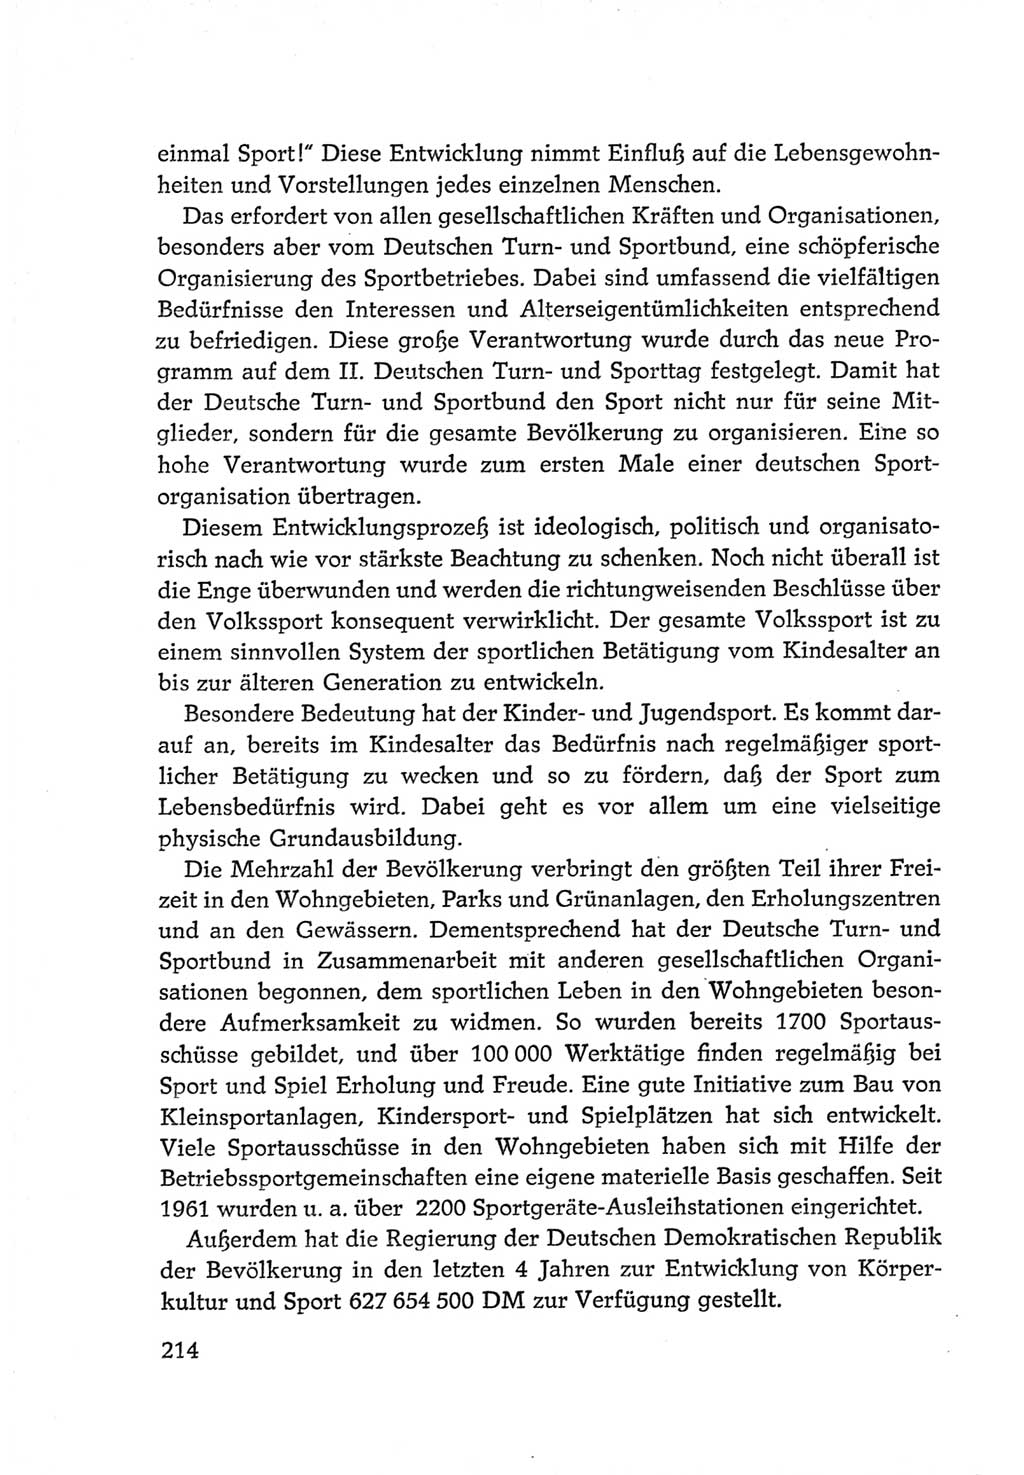 Protokoll der Verhandlungen des Ⅵ. Parteitages der Sozialistischen Einheitspartei Deutschlands (SED) [Deutsche Demokratische Republik (DDR)] 1963, Band Ⅳ, Seite 214 (Prot. Verh. Ⅵ. PT SED DDR 1963, Bd. Ⅳ, S. 214)